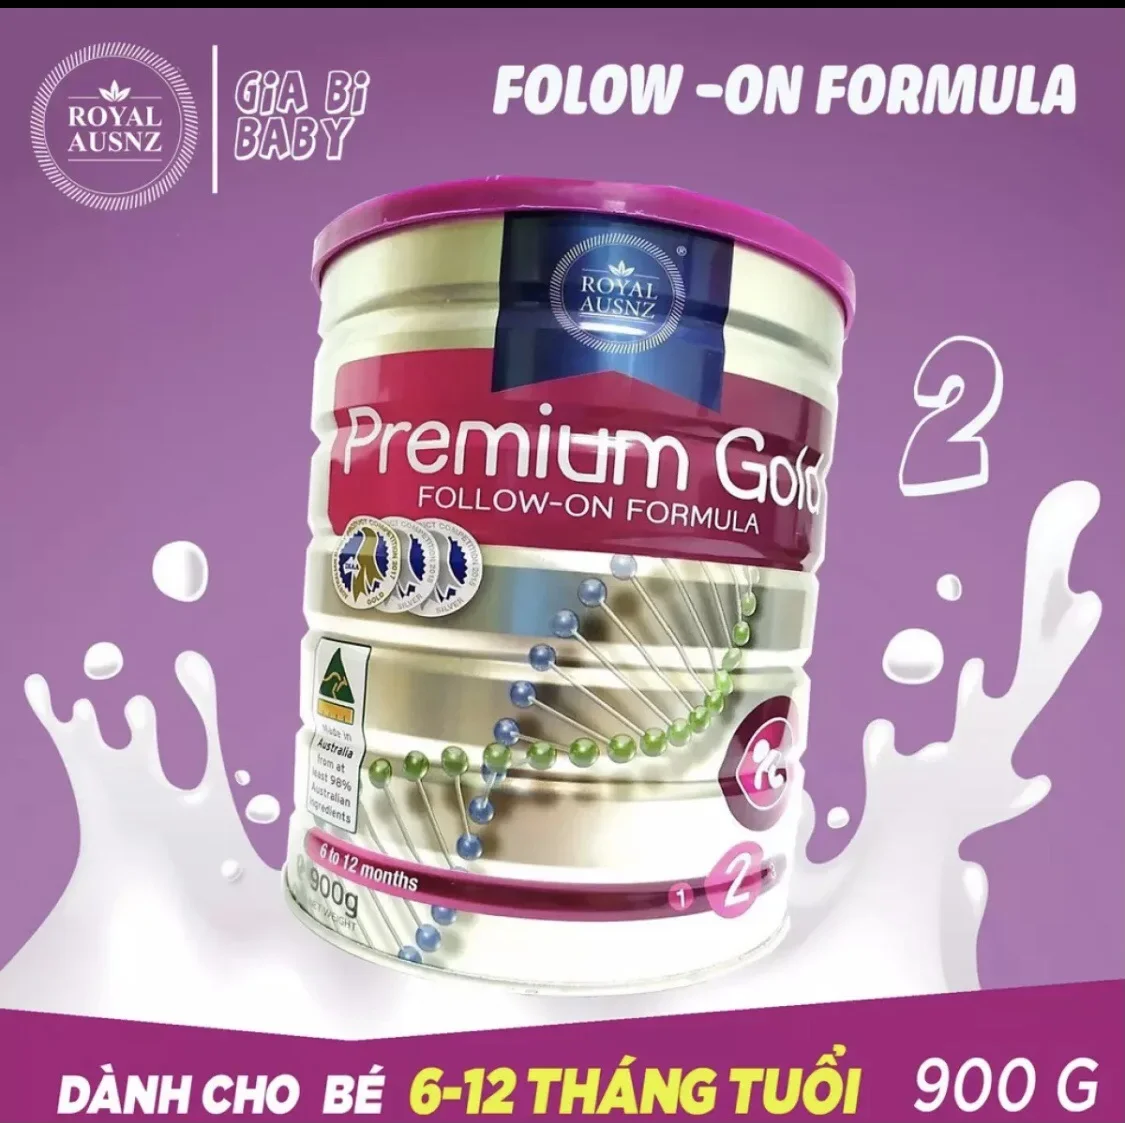 Sữa Hoàng Gia Premium Gold 2 (900g) - Follow - On Fomula - Dành cho trẻ từ 6-12 tháng